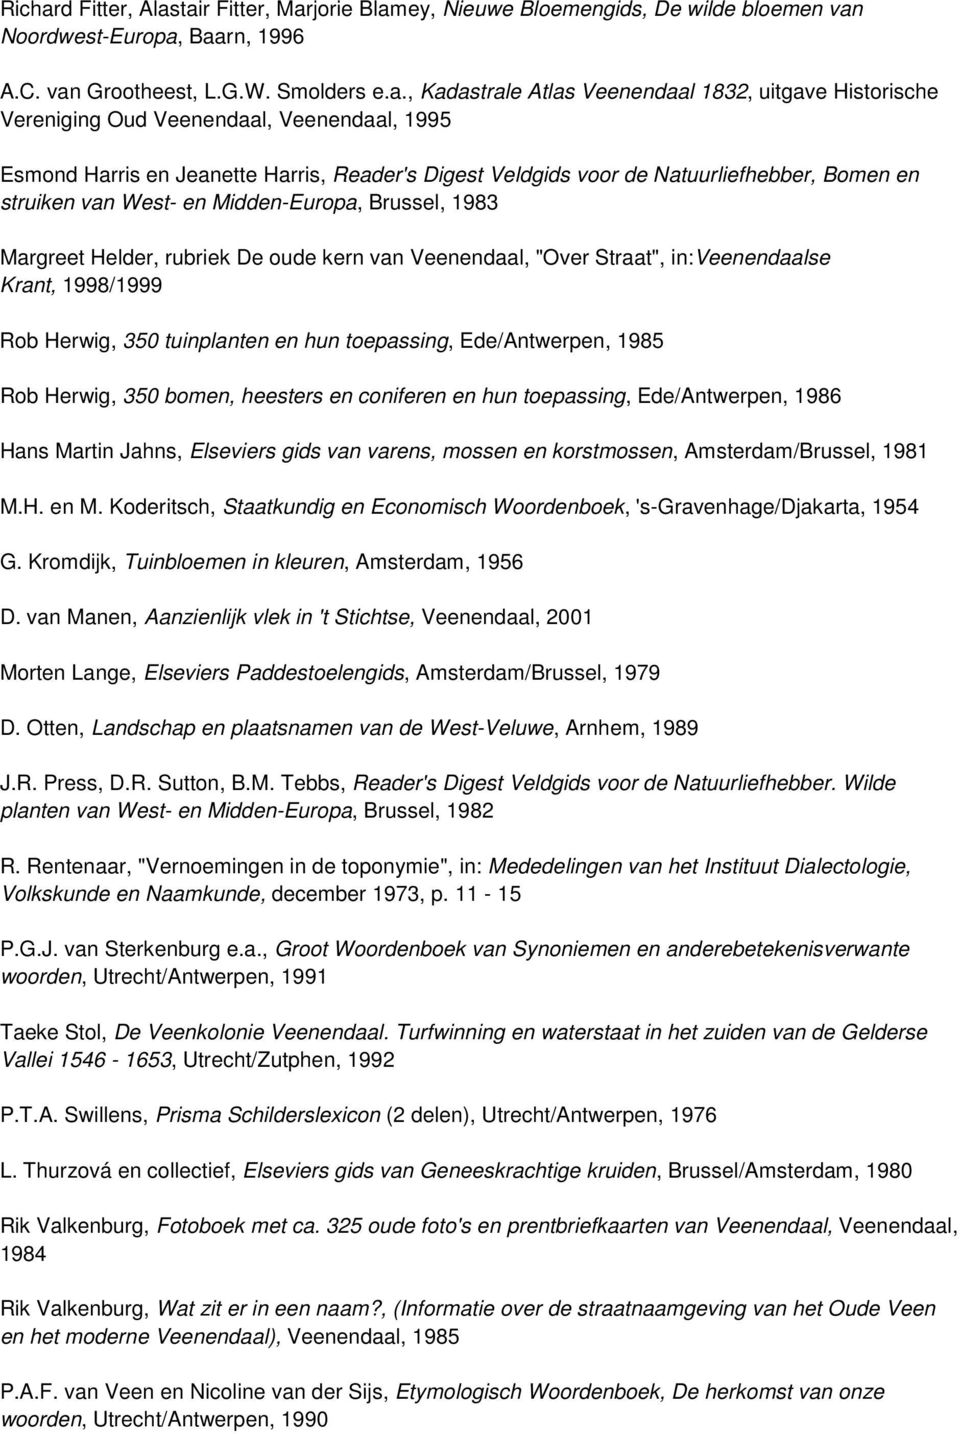 tair Fitter, Marjorie Blamey, Nieuwe Bloemengids, De wilde bloemen van Noordwest-Europa, Baarn, 1996 A.C. van Grootheest, L.G.W. Smolders e.a., Kadastrale Atlas Veenendaal 1832, uitgave Historische